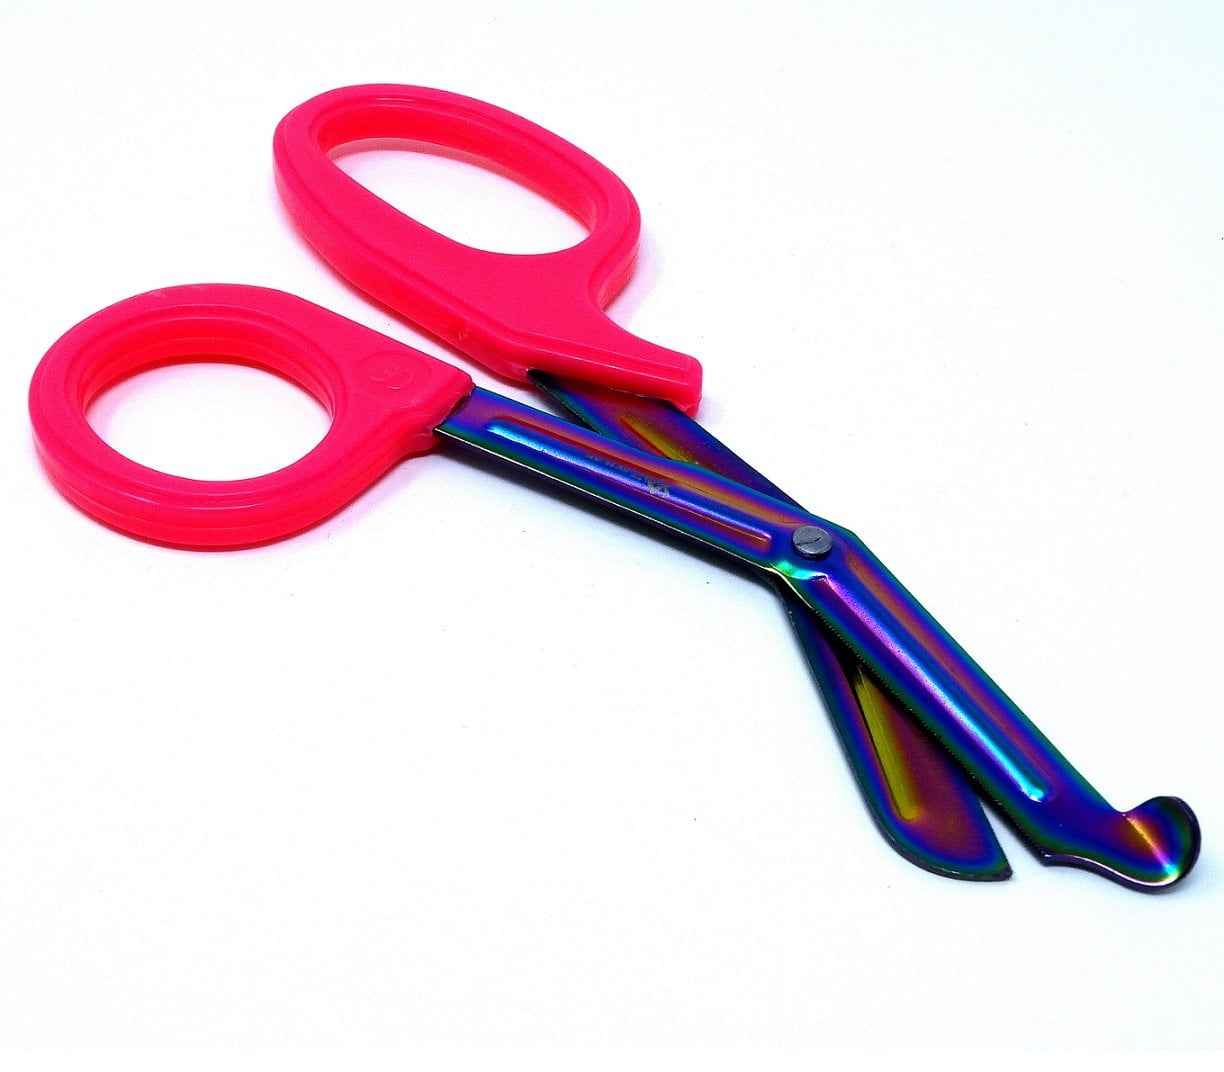 vSHEARS 6.25 Fiber Optic Kevlar Cutter Scissors / Shears: VT-2951